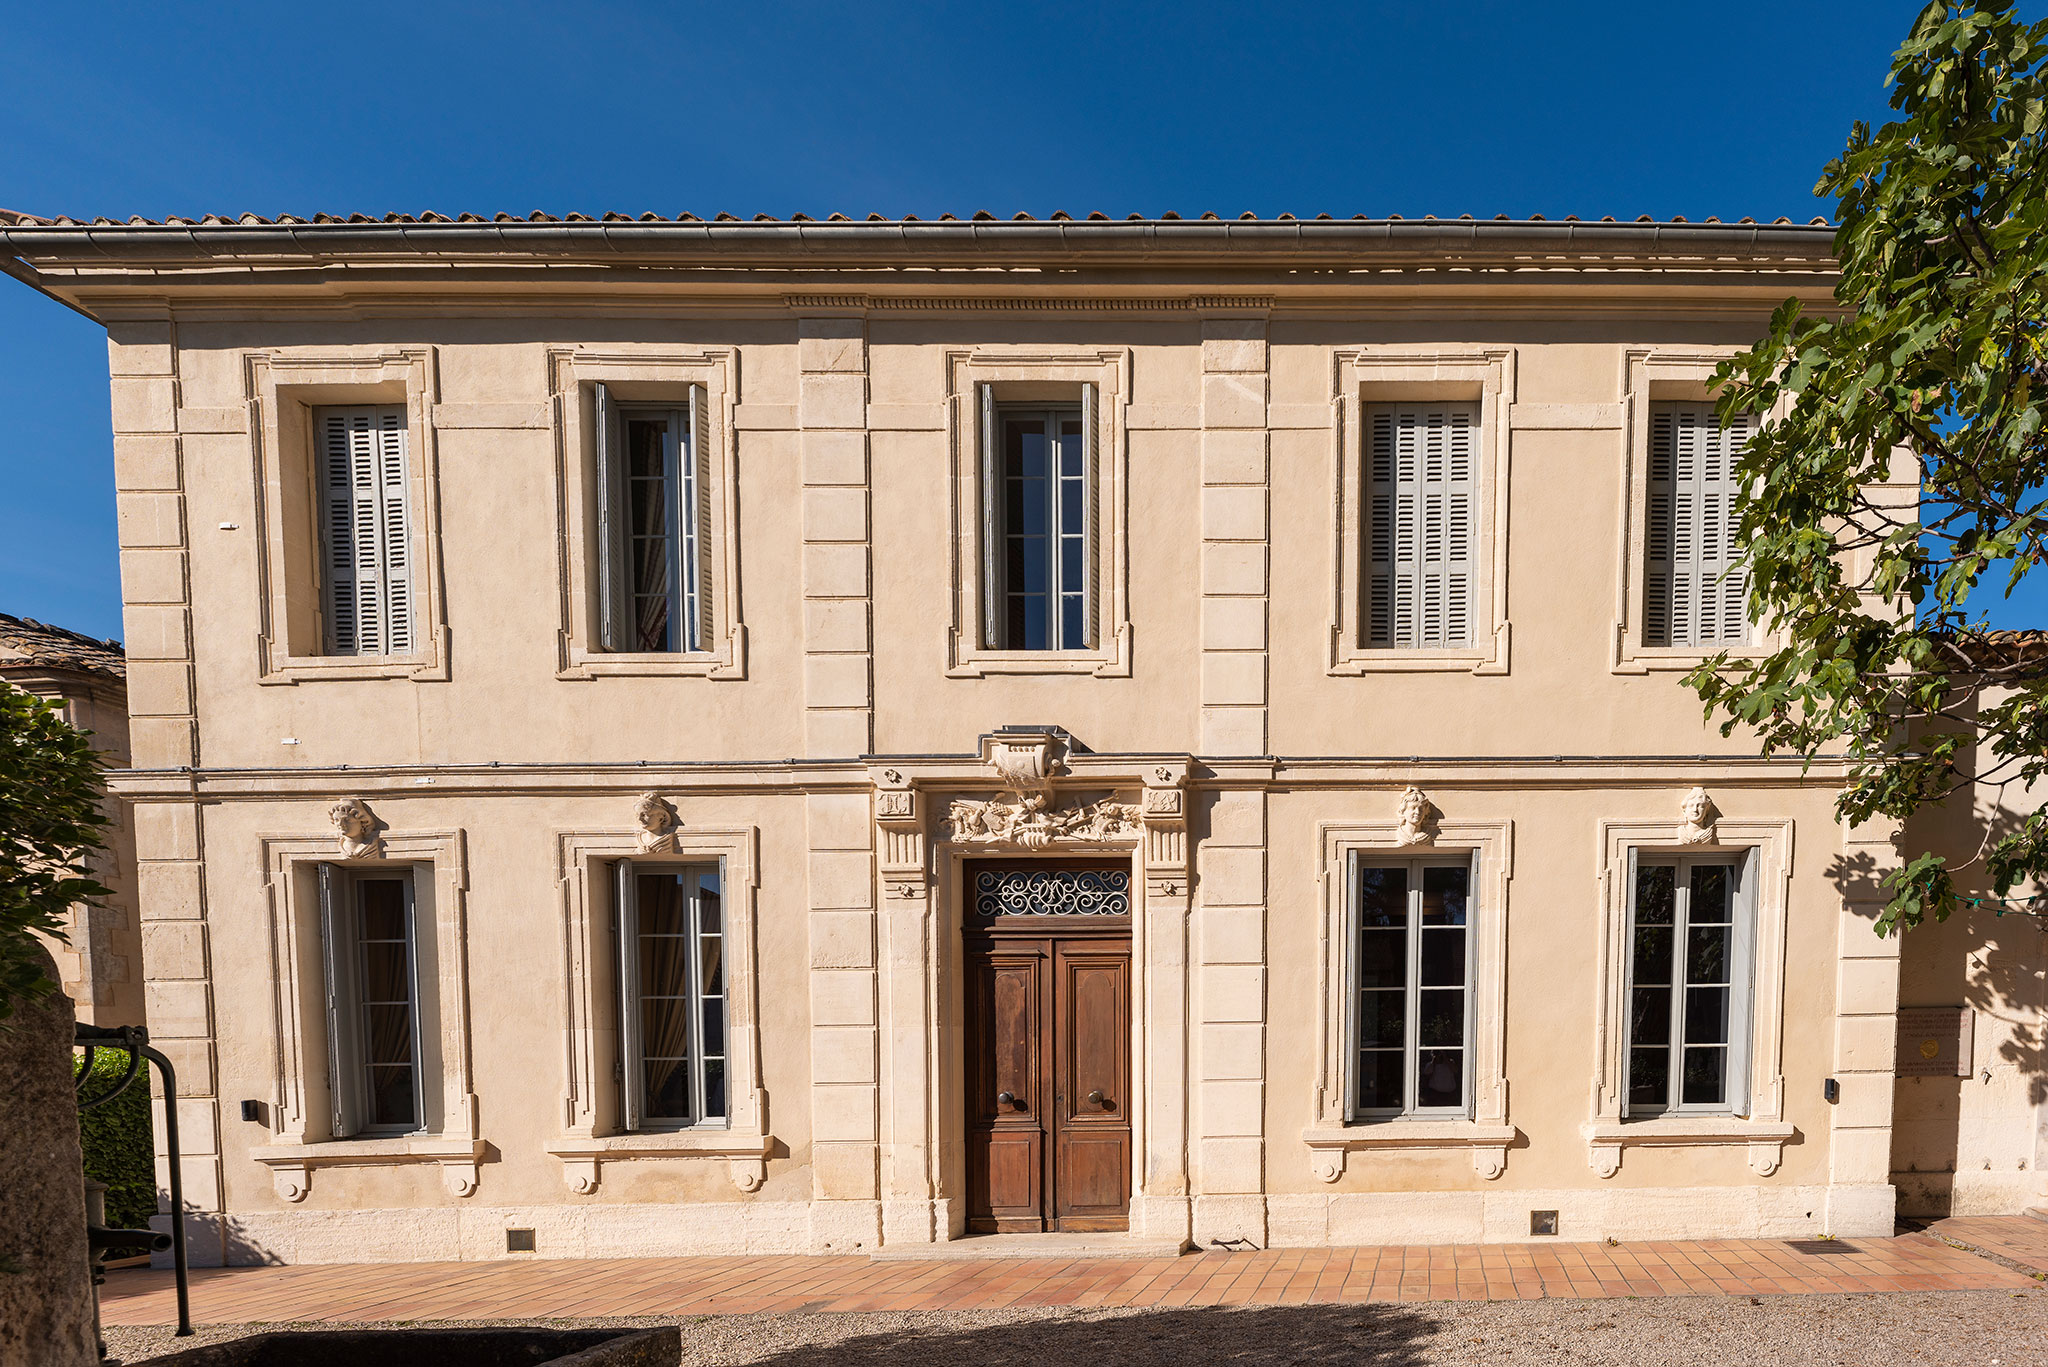 Nous faisons halte à Maillane où se trouve la maison du poète provençal Frédéric Mistral.